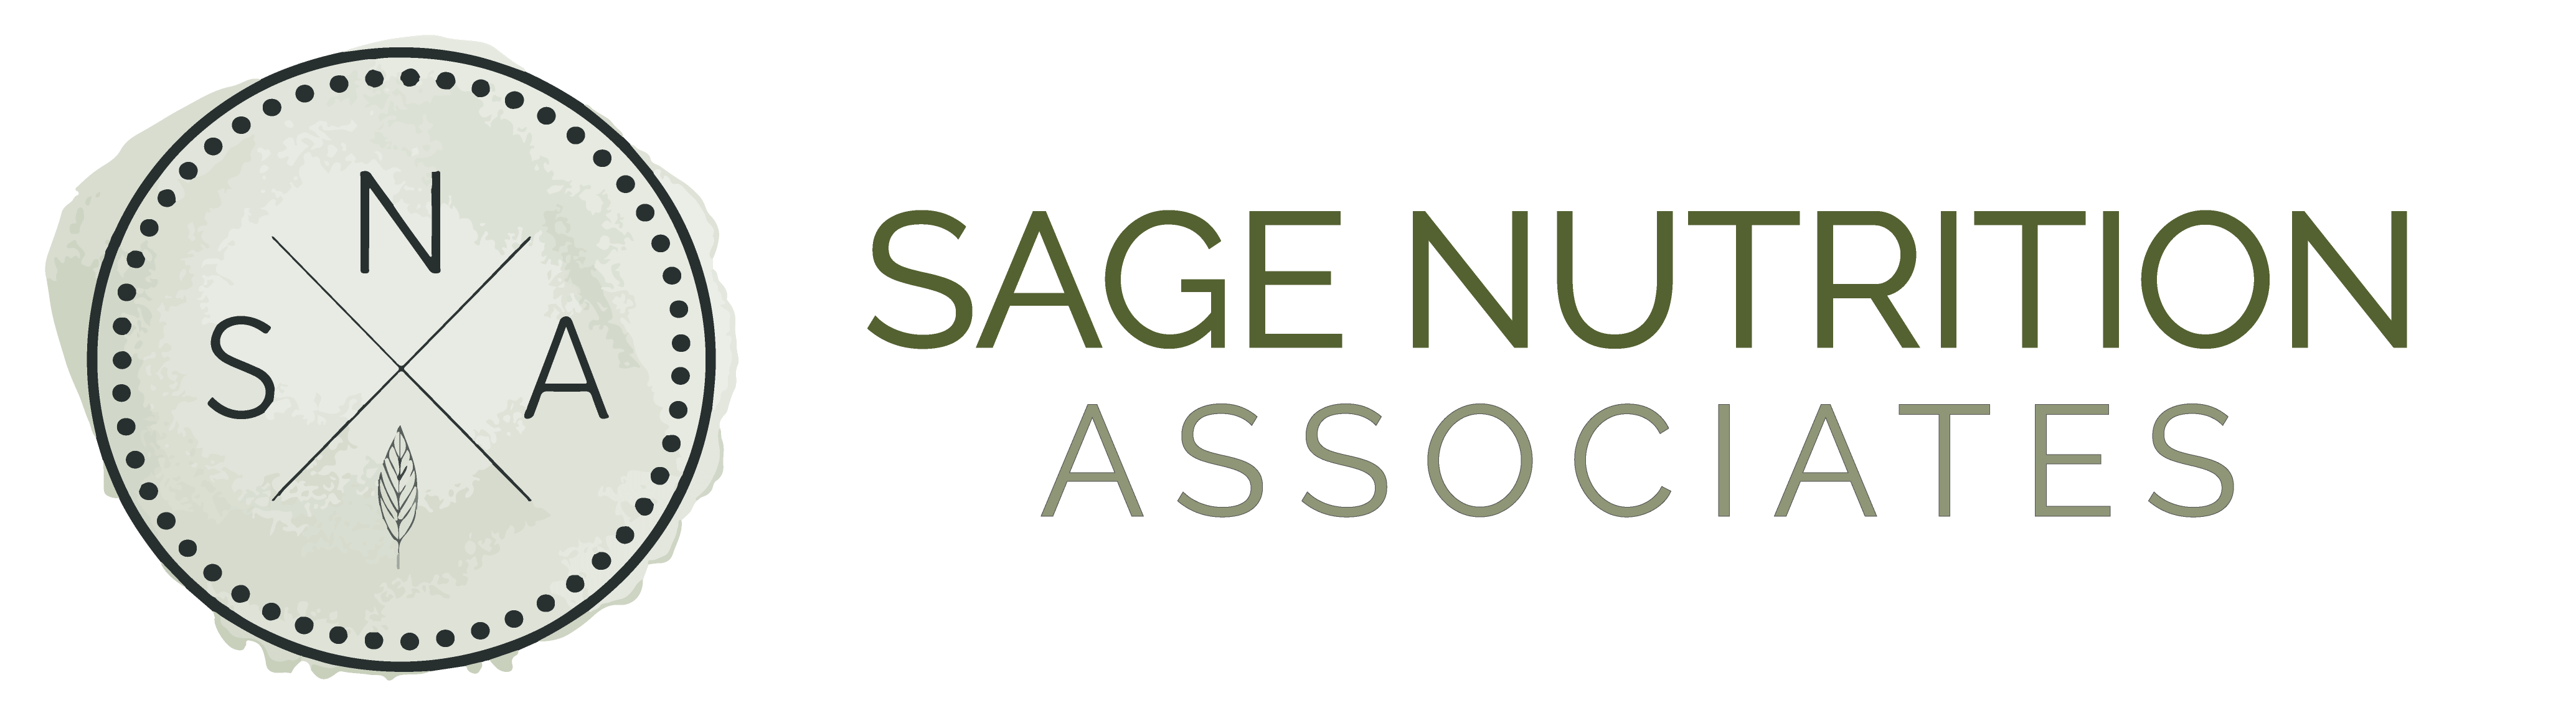 Sage Nutrition Associates - RD Exam Prep